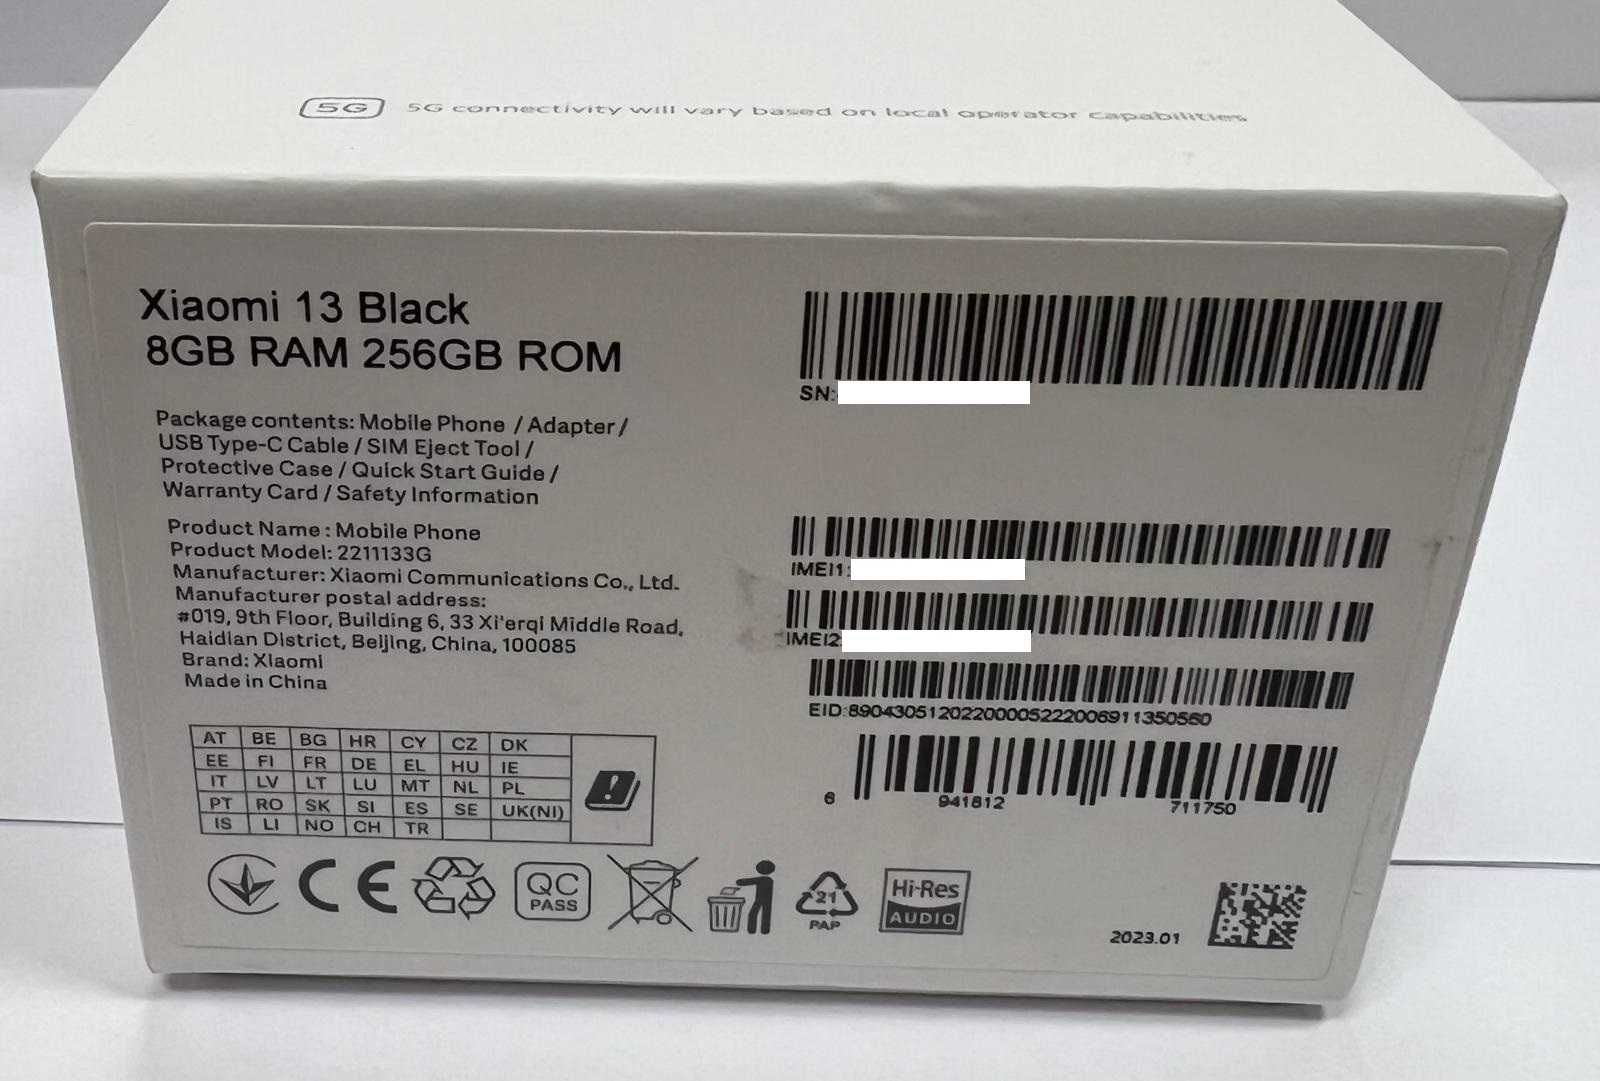 New Xiaomi 13 5G 8/256GB Czarny Black Kraków krakowska 4 Sklep GSM